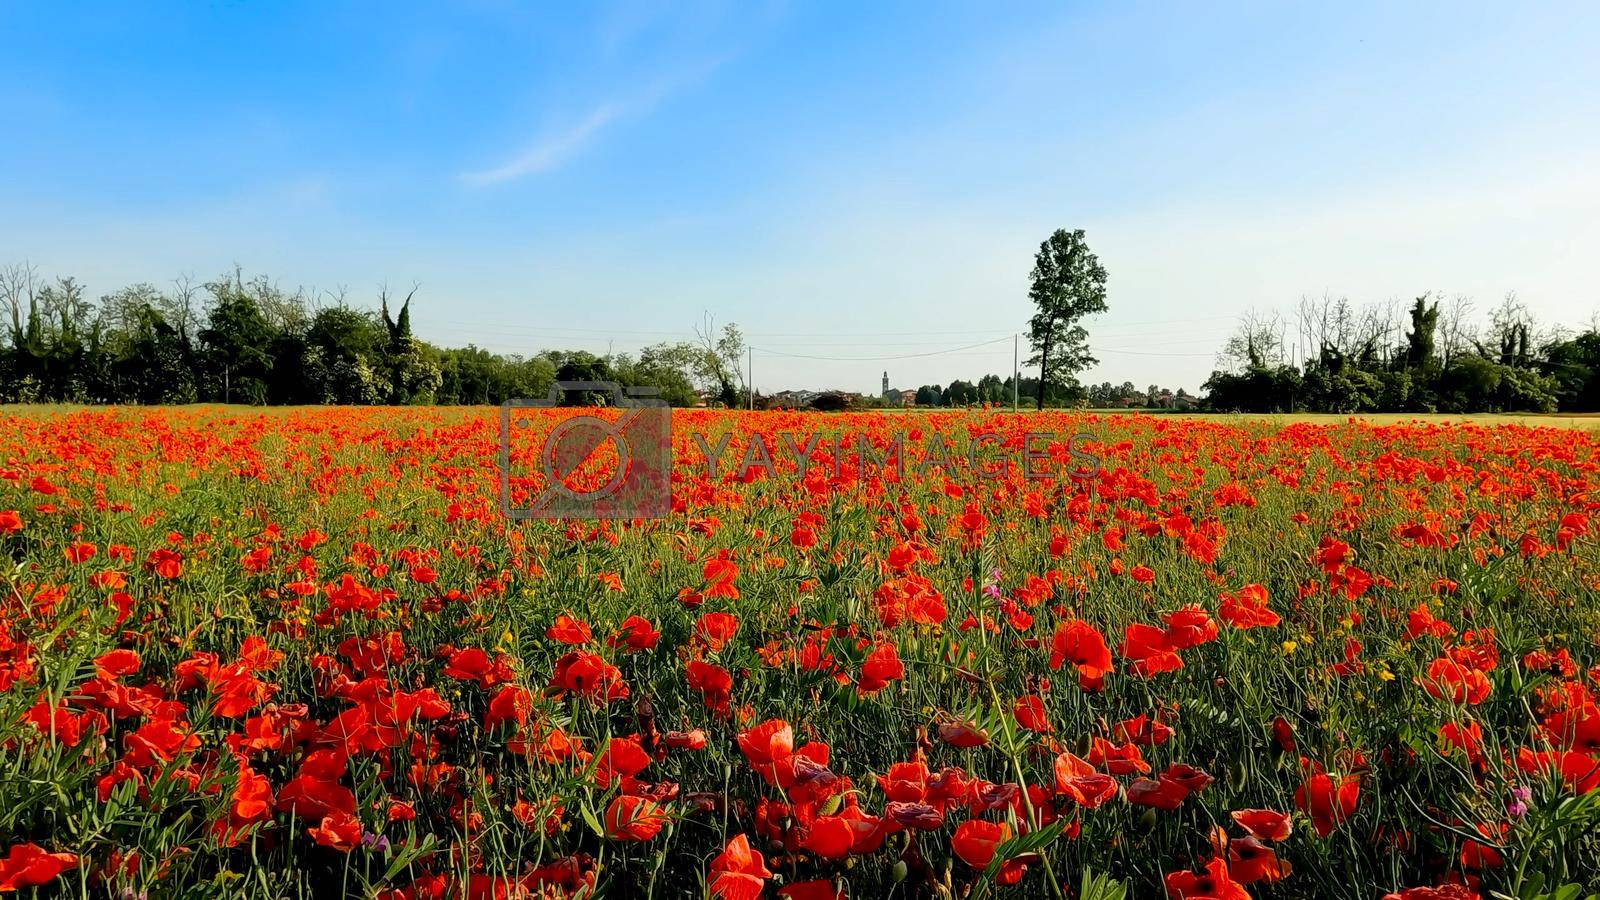 Landscape of a Poppy Field in the Italian Countryside